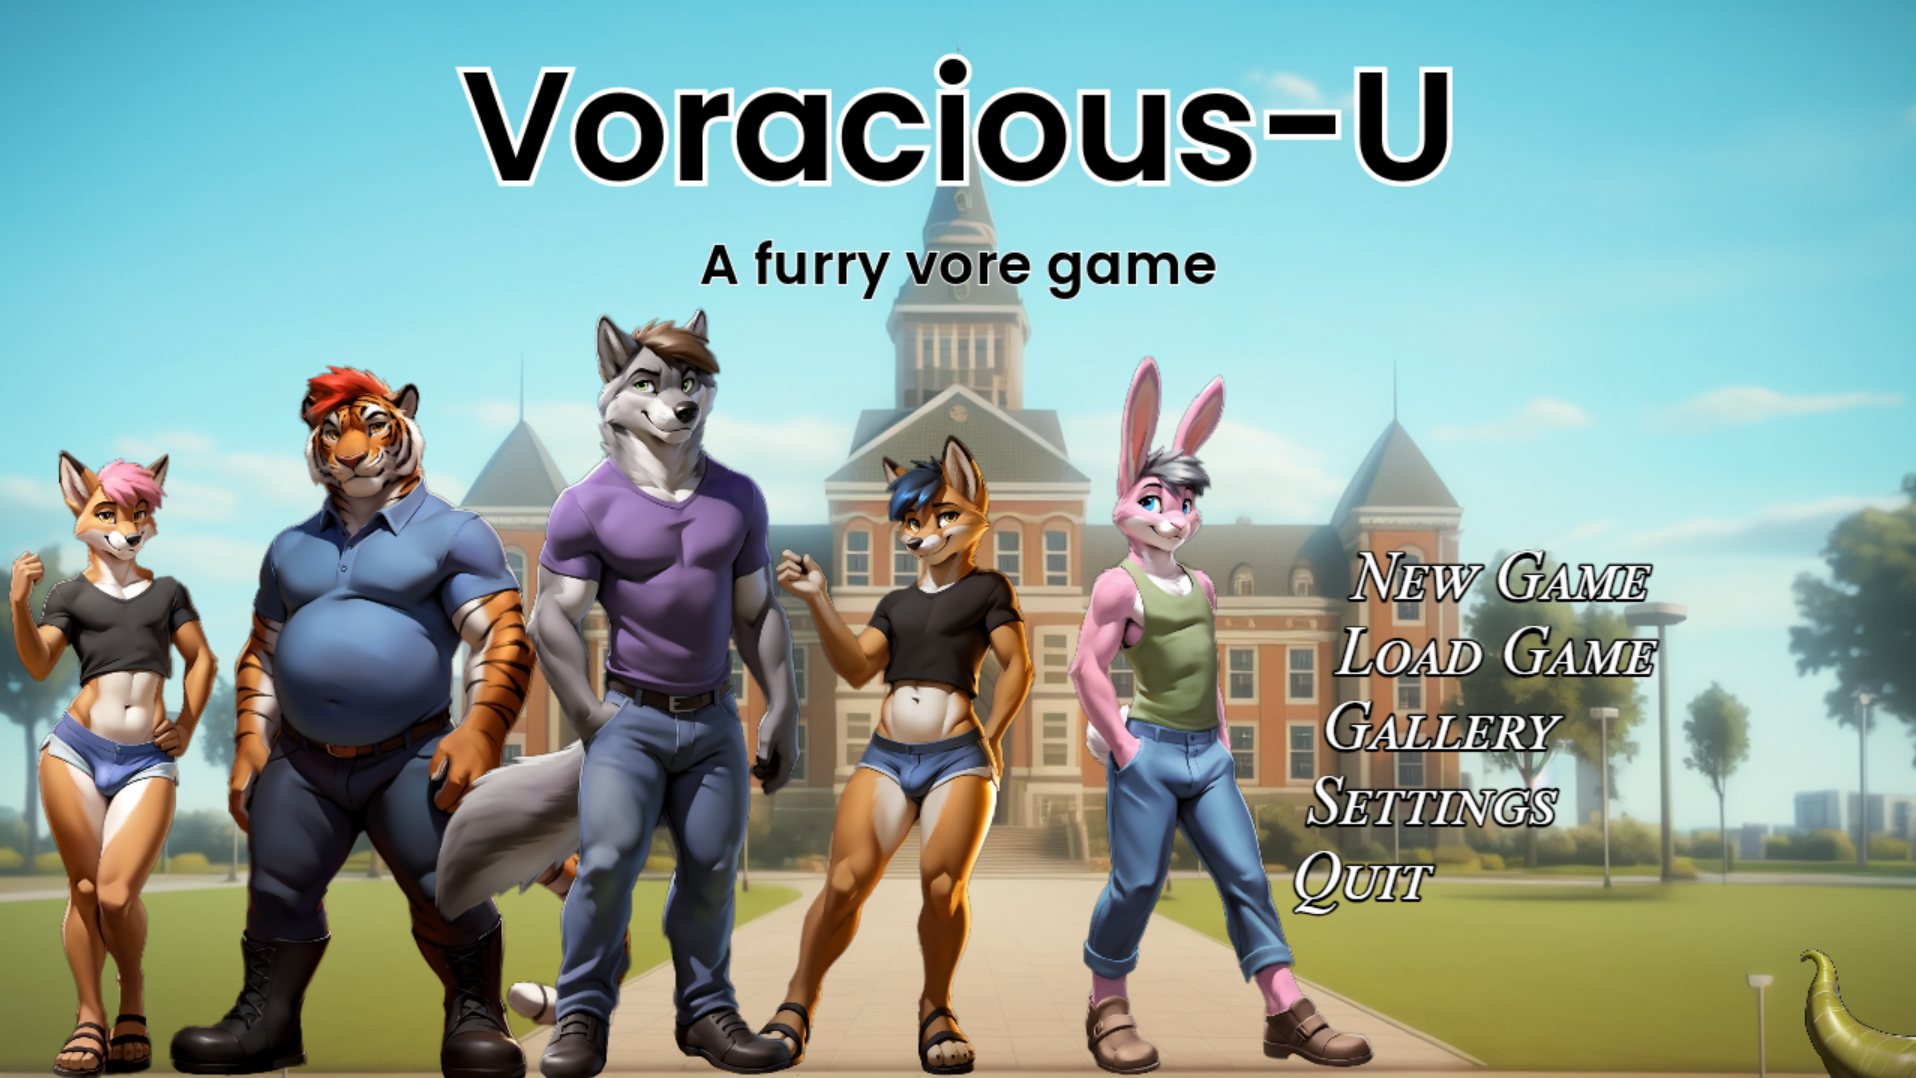 Voracious-U